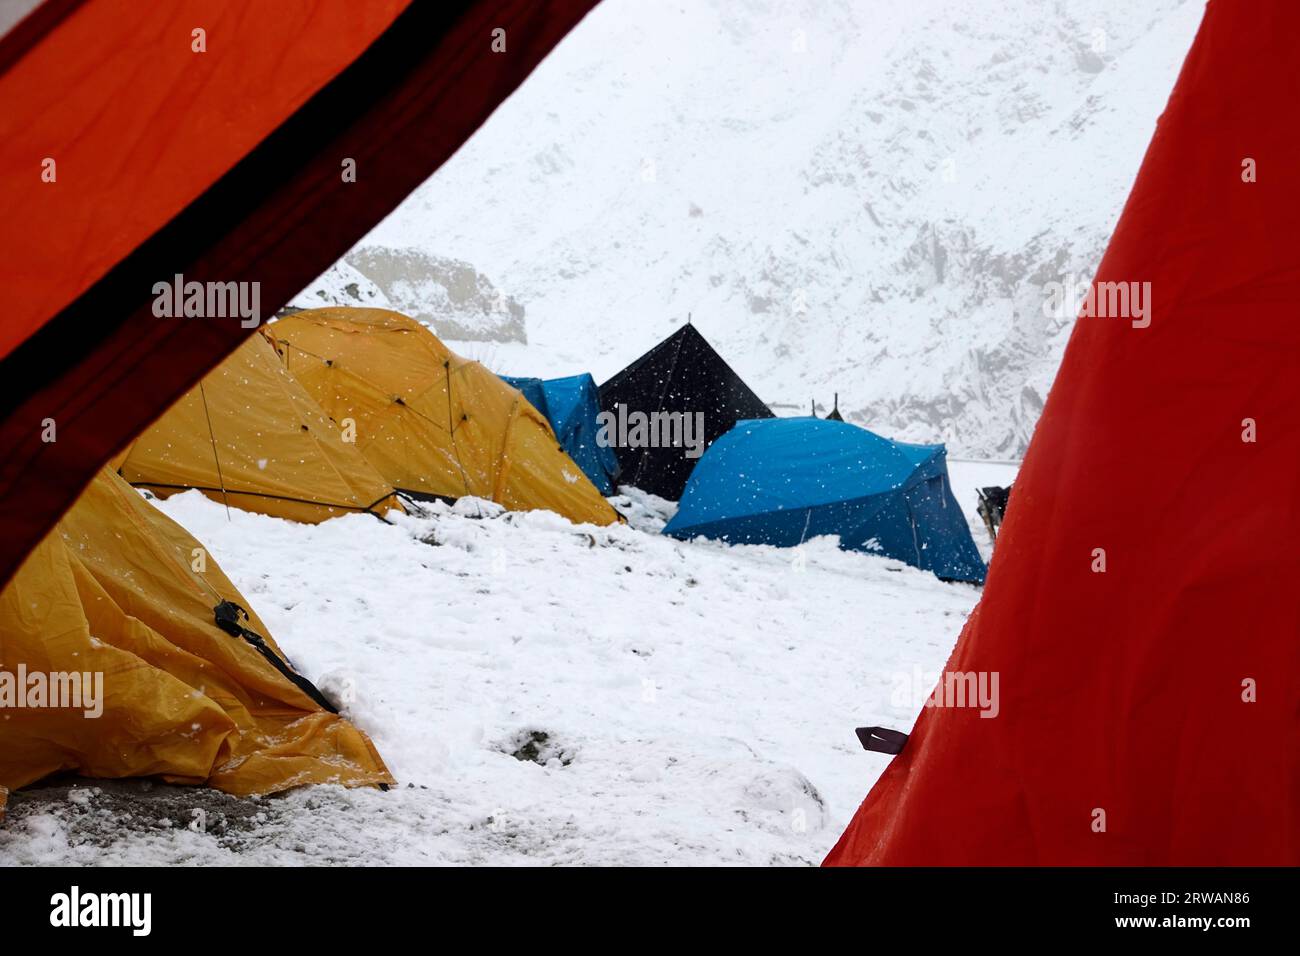 Tentes plantées pour une expédition d'alpinisme, Himalaya indien, Inde Banque D'Images